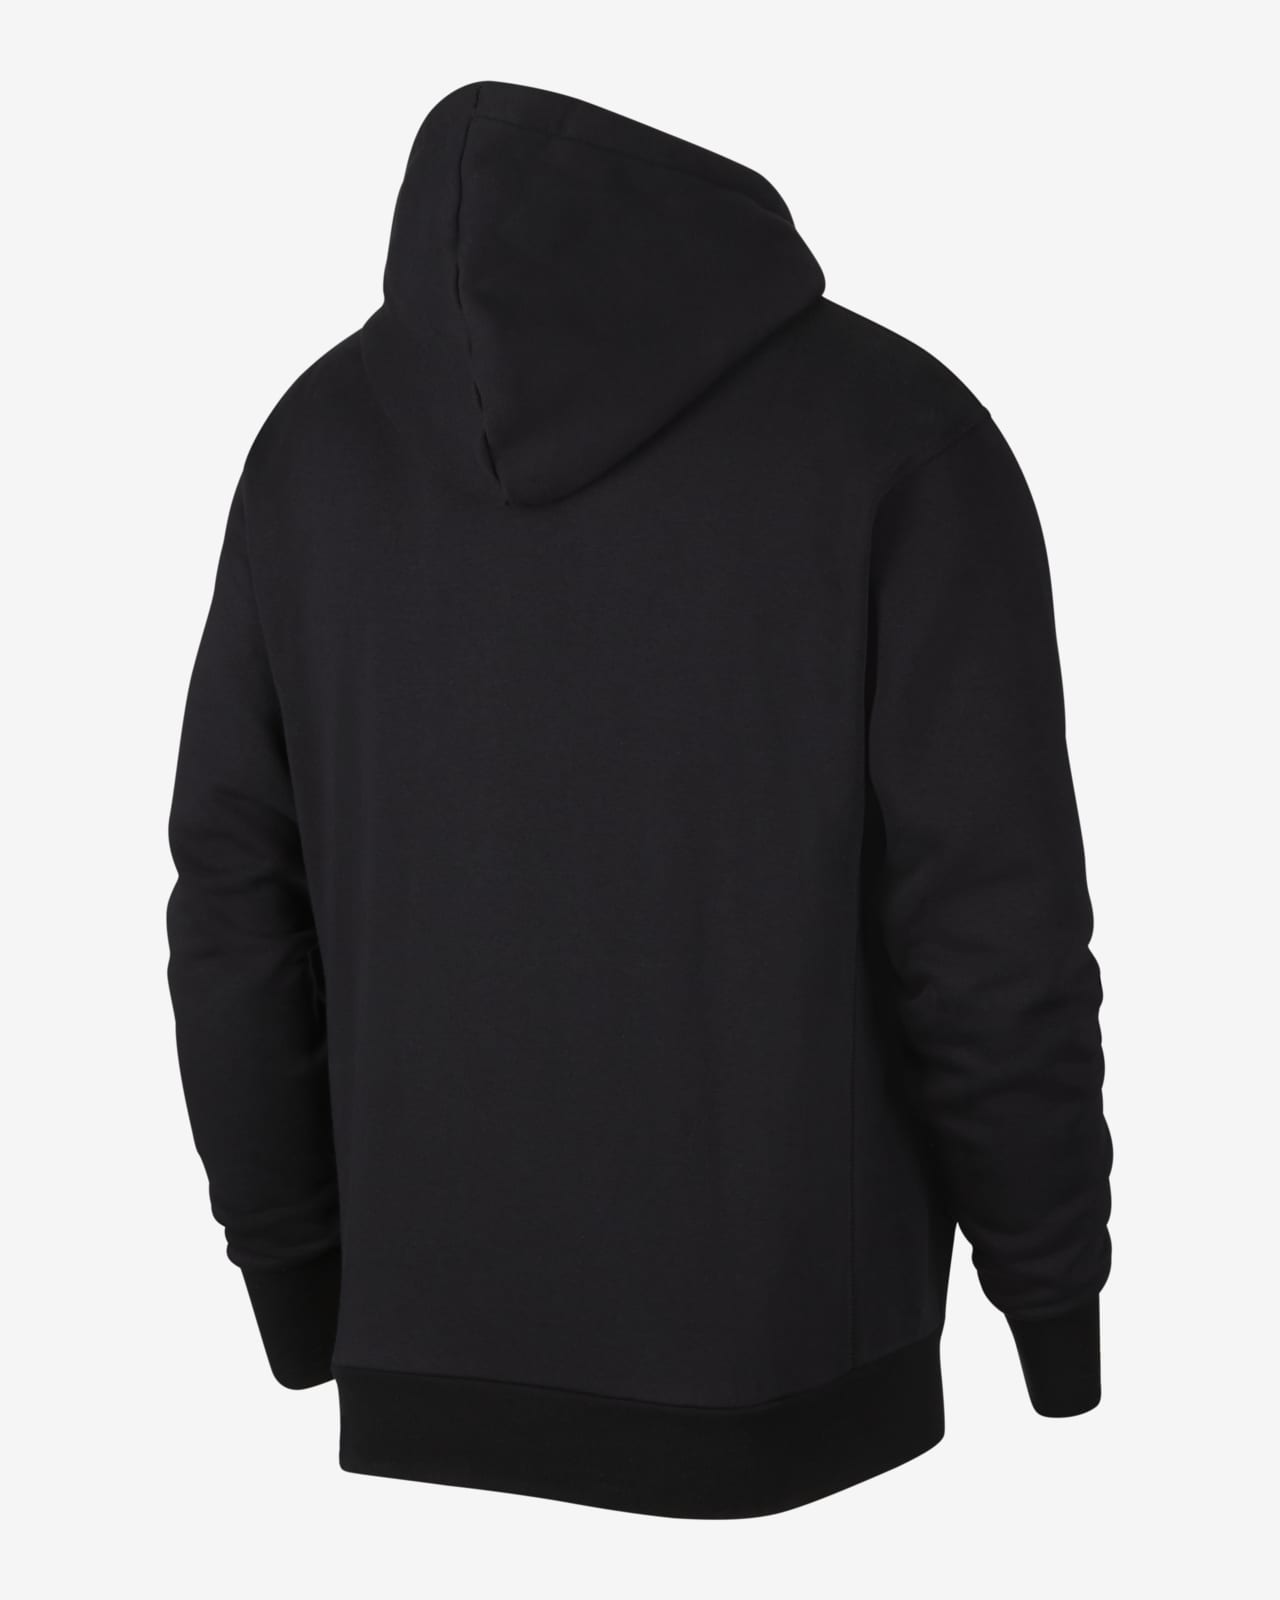 raptors city edition hoodie